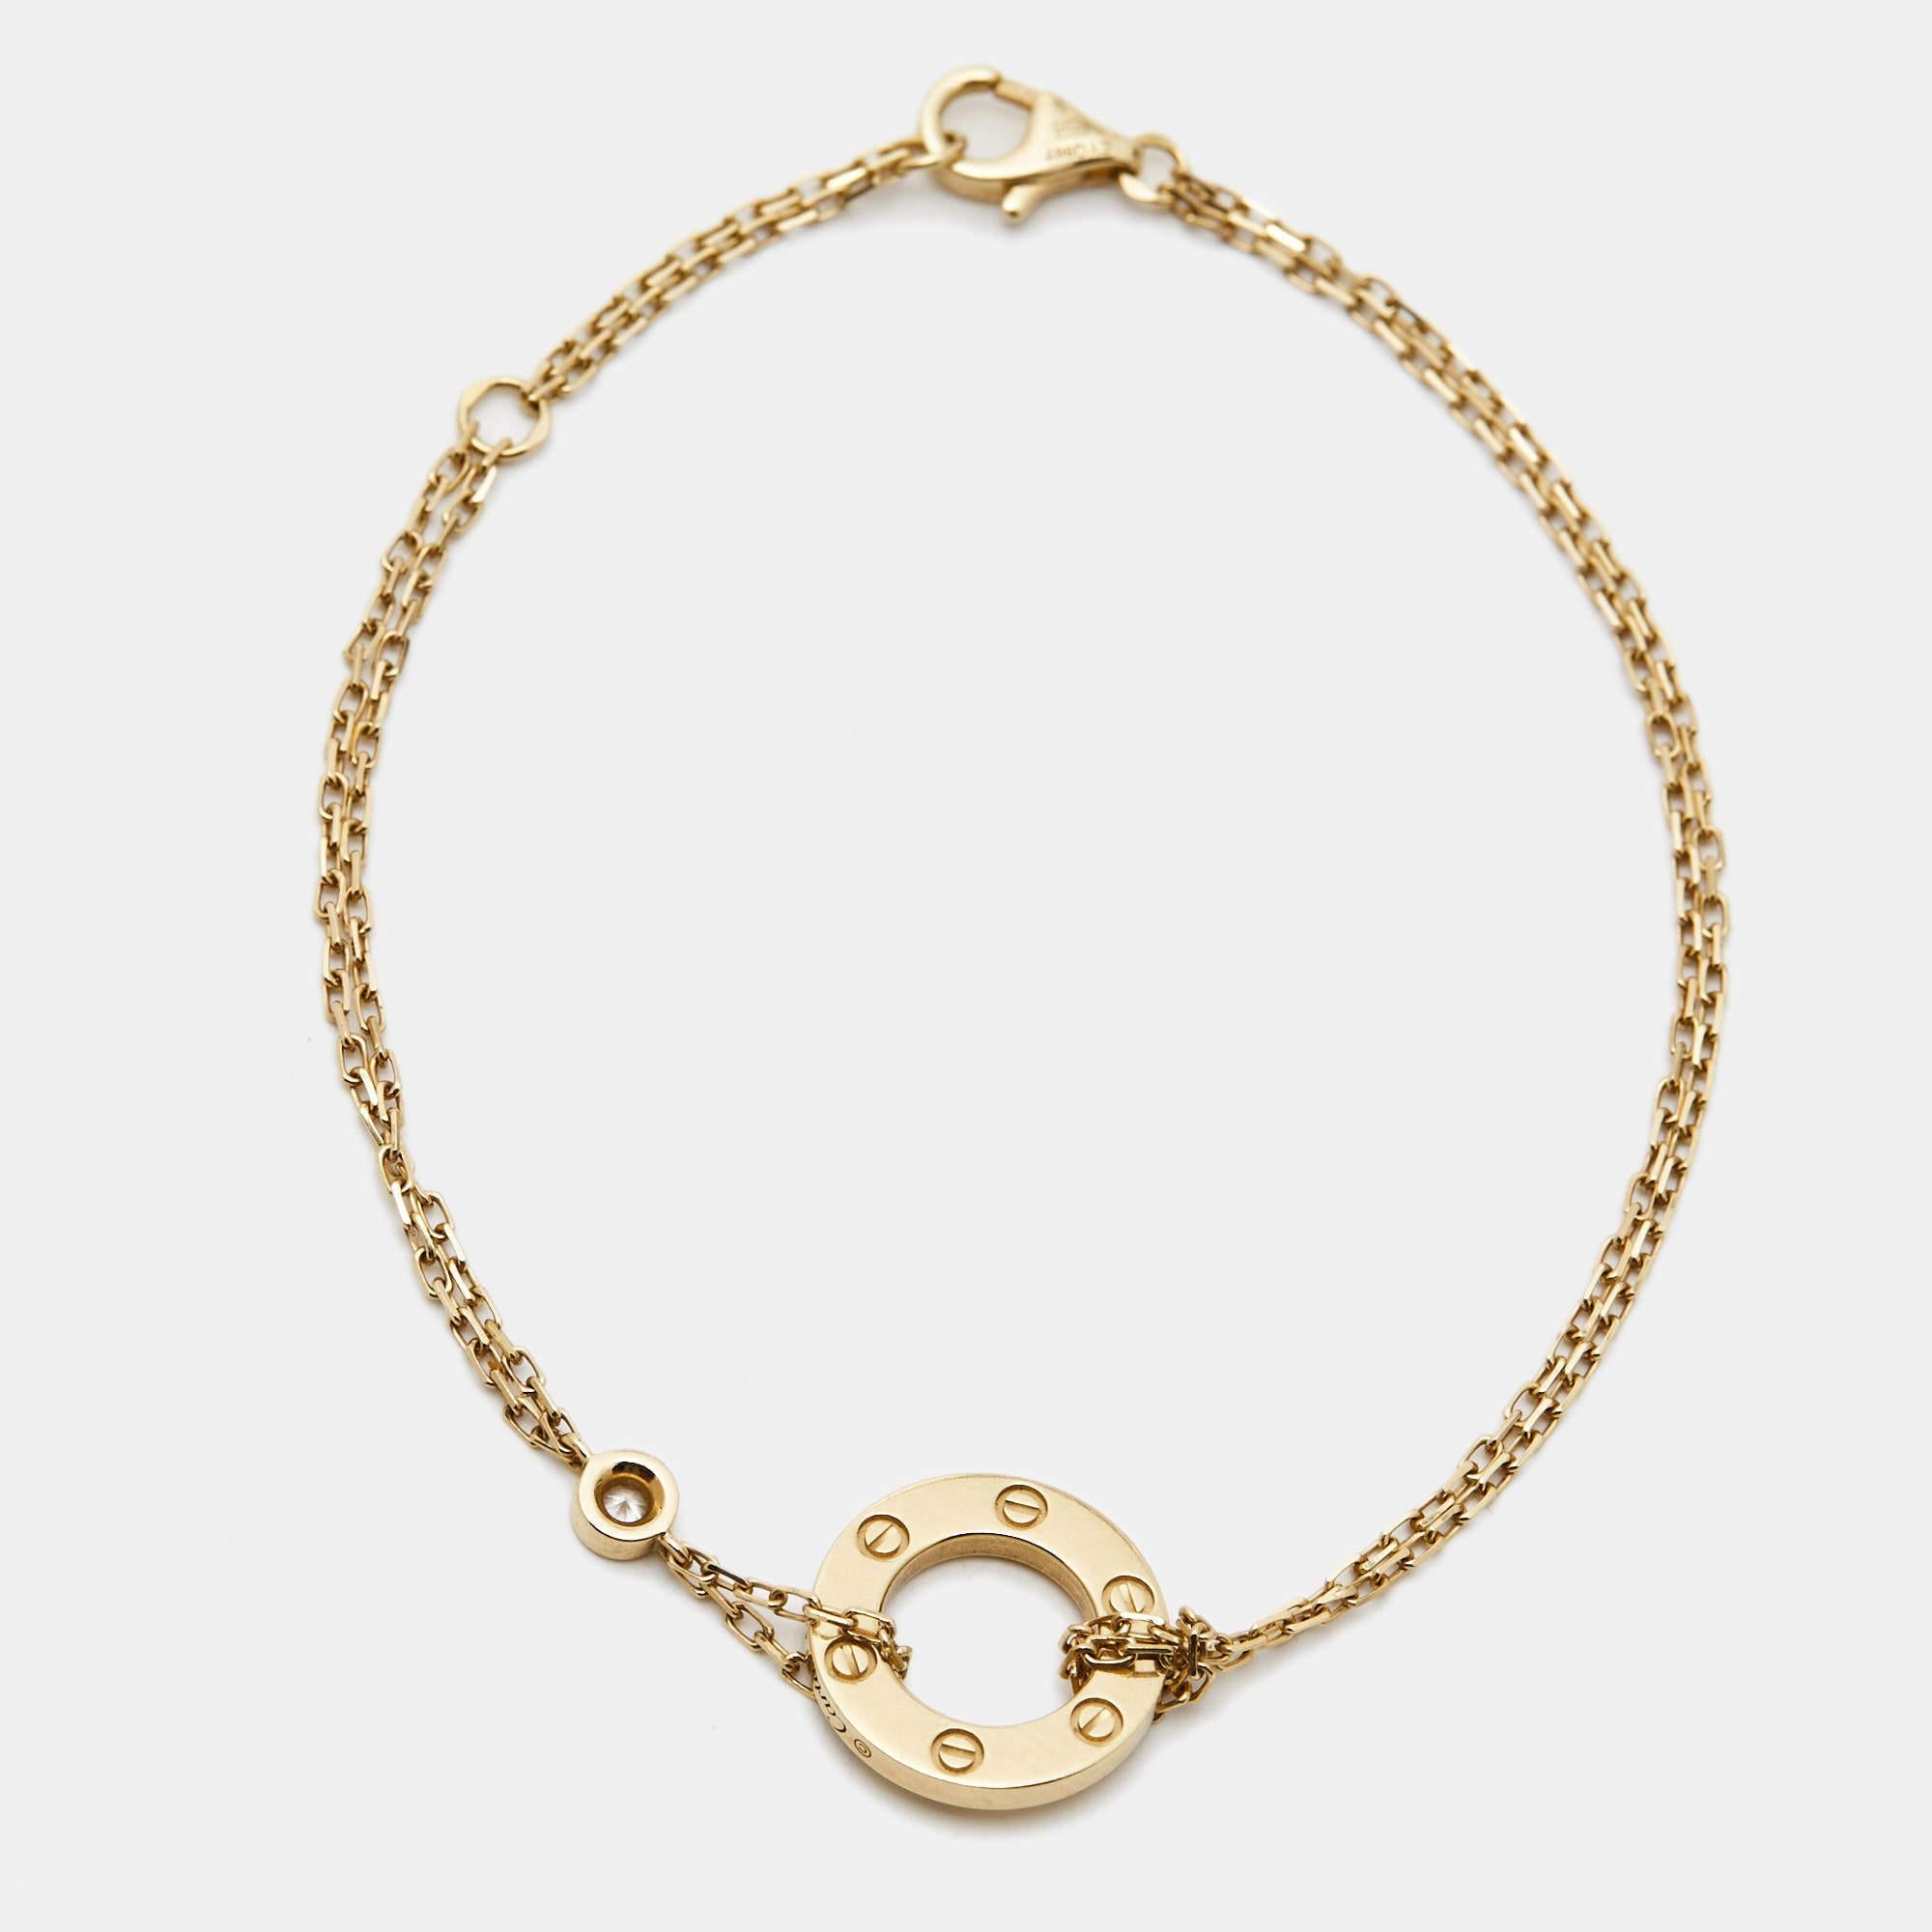 Le bracelet Love de Cartier est un chef-d'œuvre exquis, qui allie harmonieusement luxe et romantisme. Réalisé en or jaune 18 carats lustré, son motif Love emblématique est orné de diamants éblouissants qui lui confèrent une touche de brillance. Le